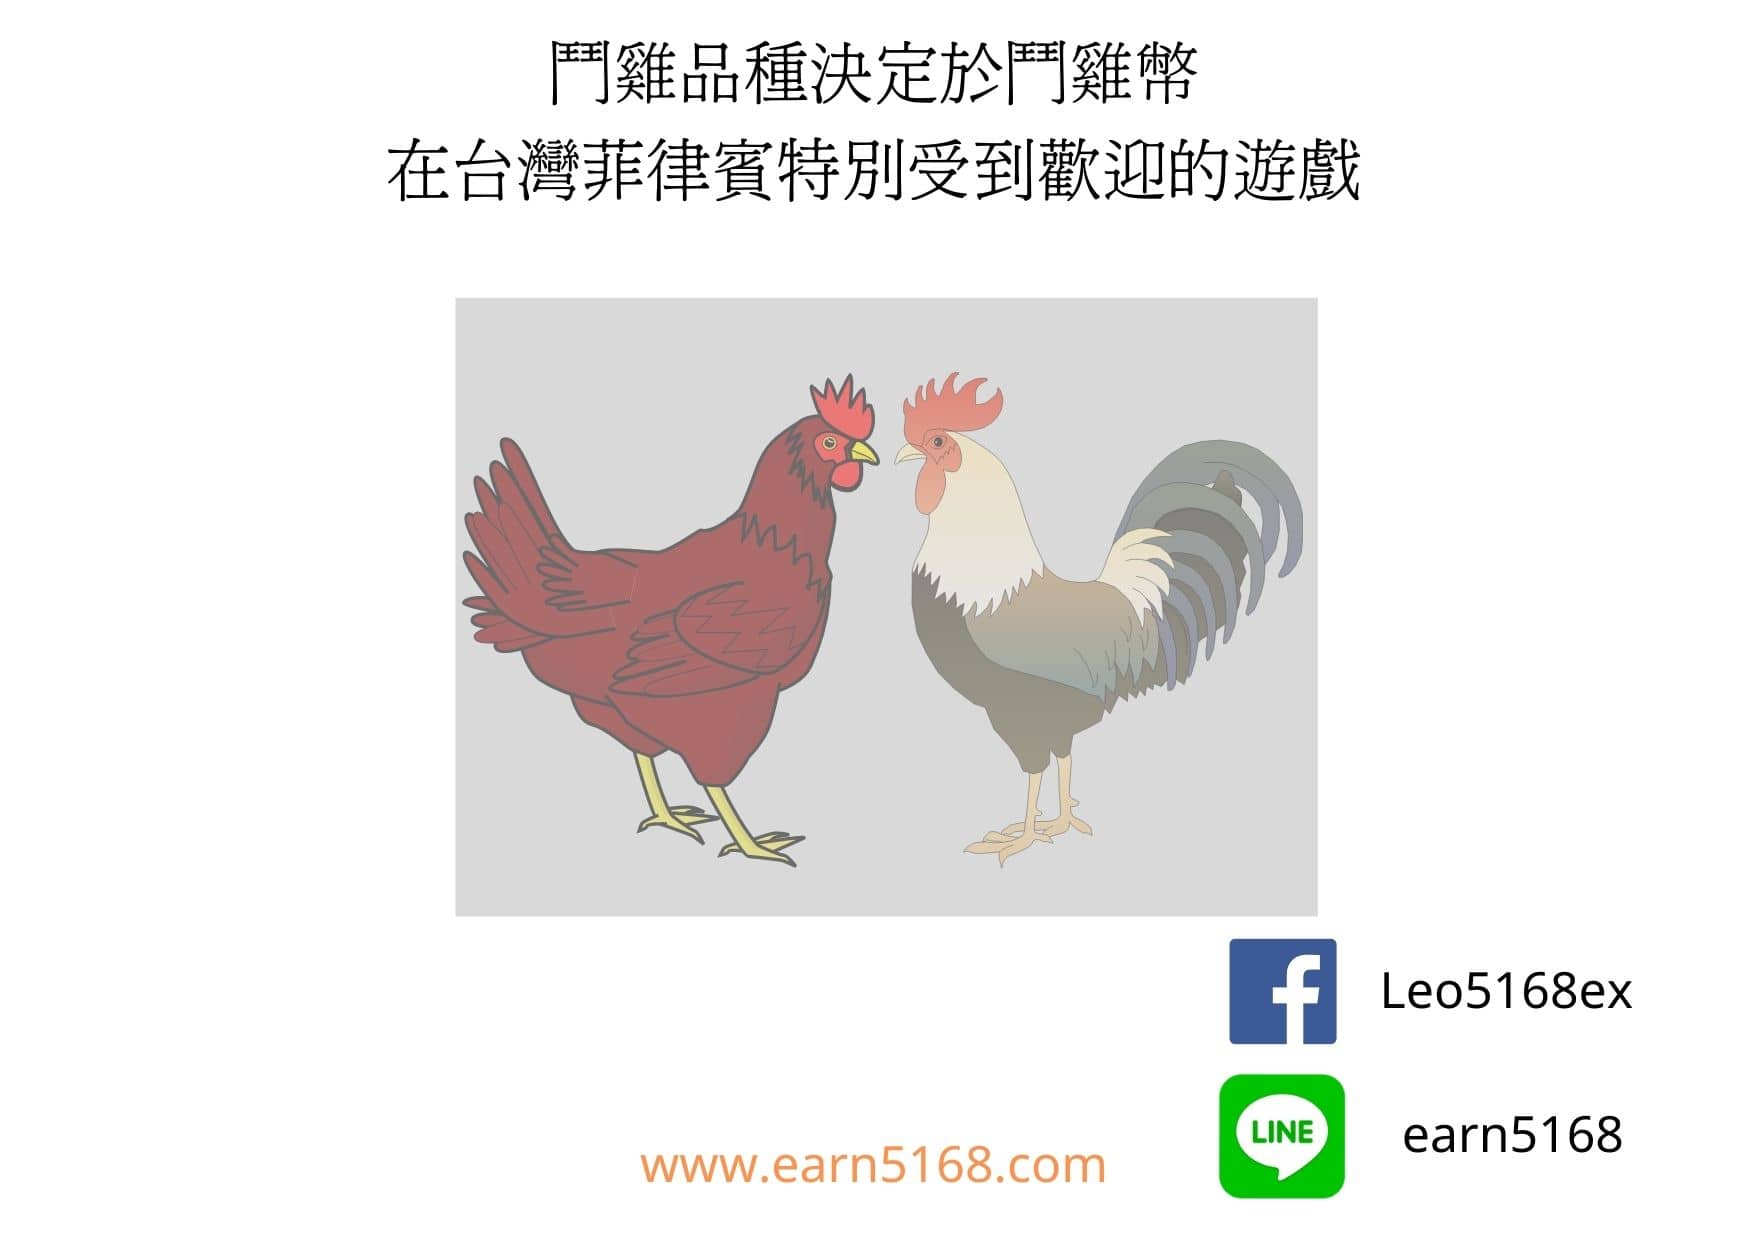 鬥雞品種決定於鬥雞幣-在台灣菲律賓特別受到歡迎的遊戲